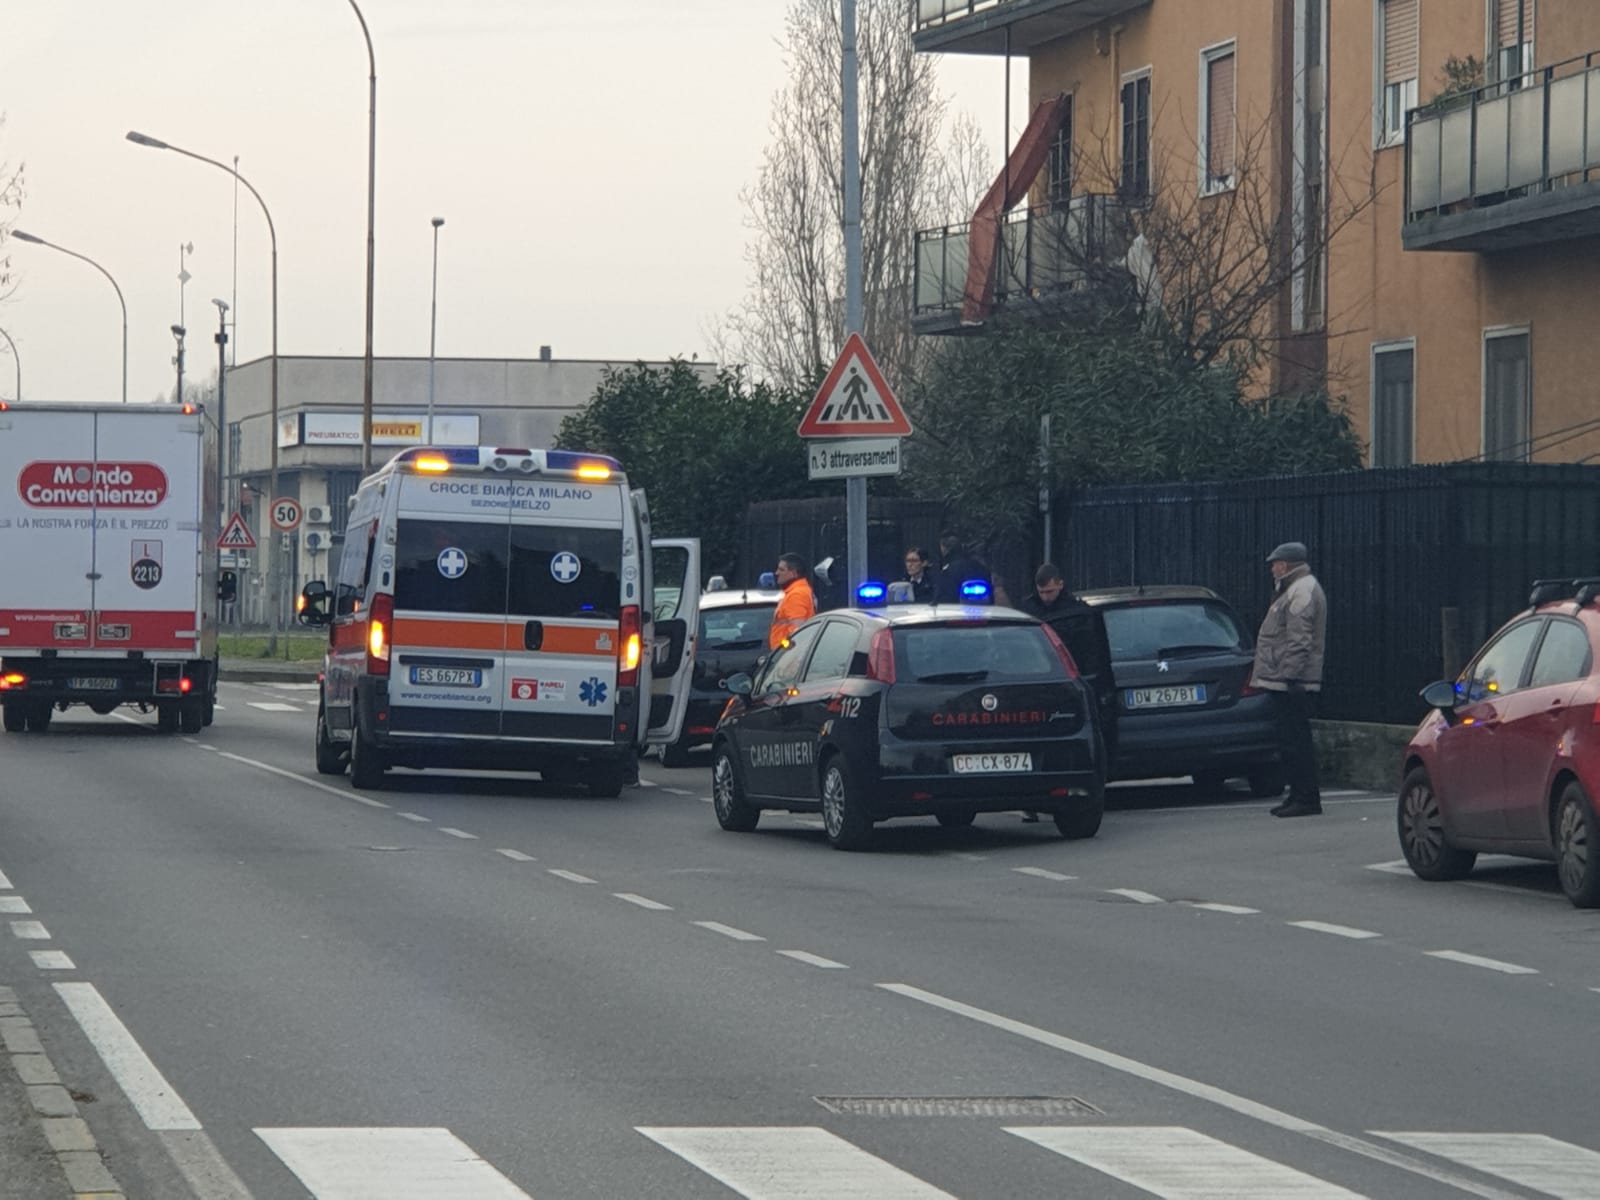 cassina de pecchi villa pompea  lancia vasi di fiori 27enne ubriaco carabinieri w ambulanza sul posto